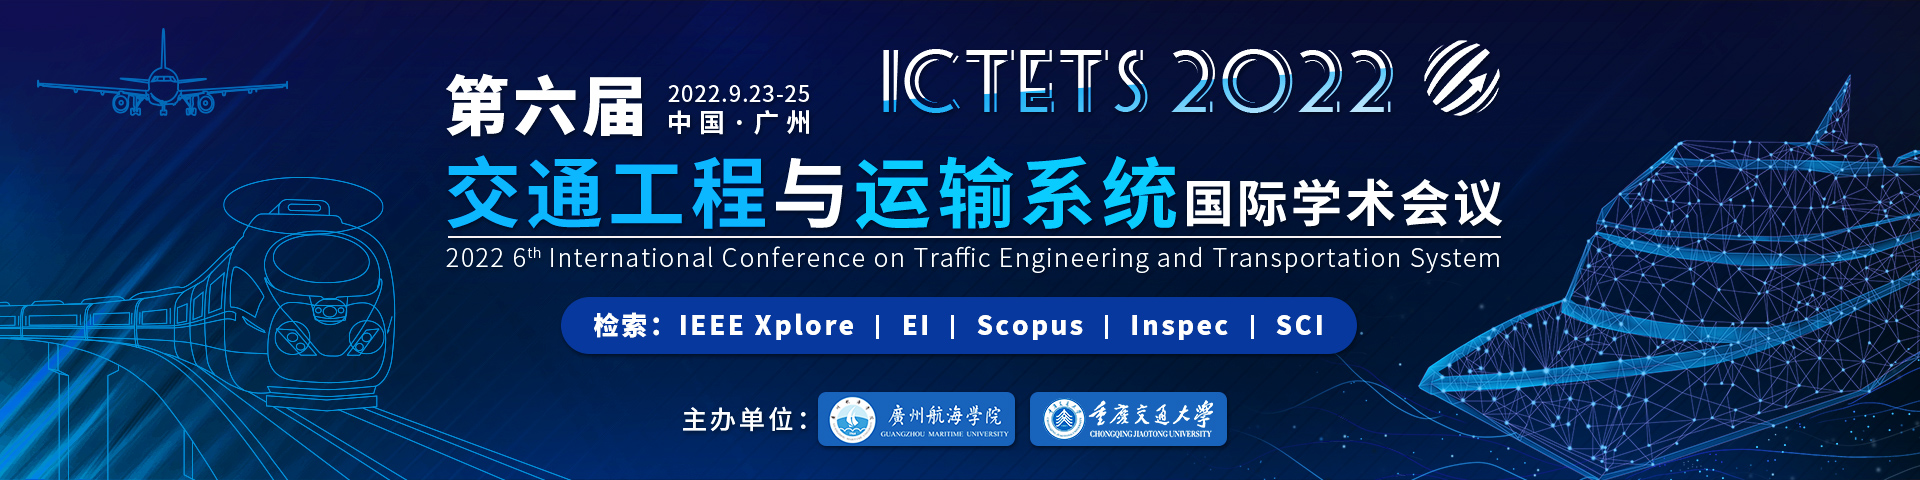 9月广州-ICTETS-艾思平台-尹旭舟20220507.jpg